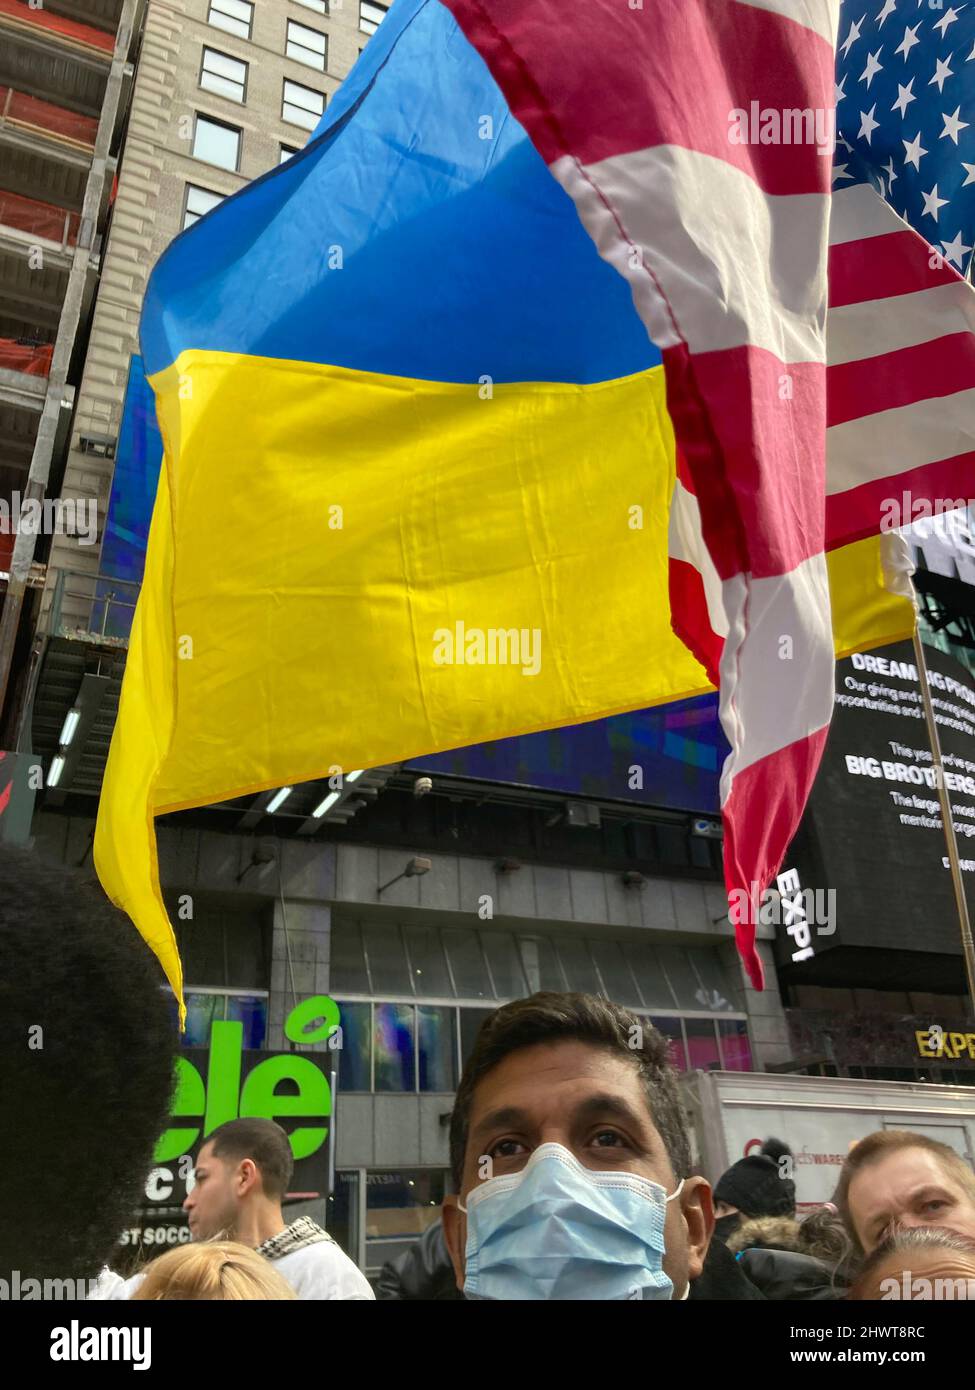 Les Ukrainiens-Américains et leurs partisans protestent contre l'invasion russe et manifestent leur soutien aux citoyens de l'Ukraine, à Times Square, à New York, le samedi 5 mars 2022. (© Frances M. Roberts) Banque D'Images